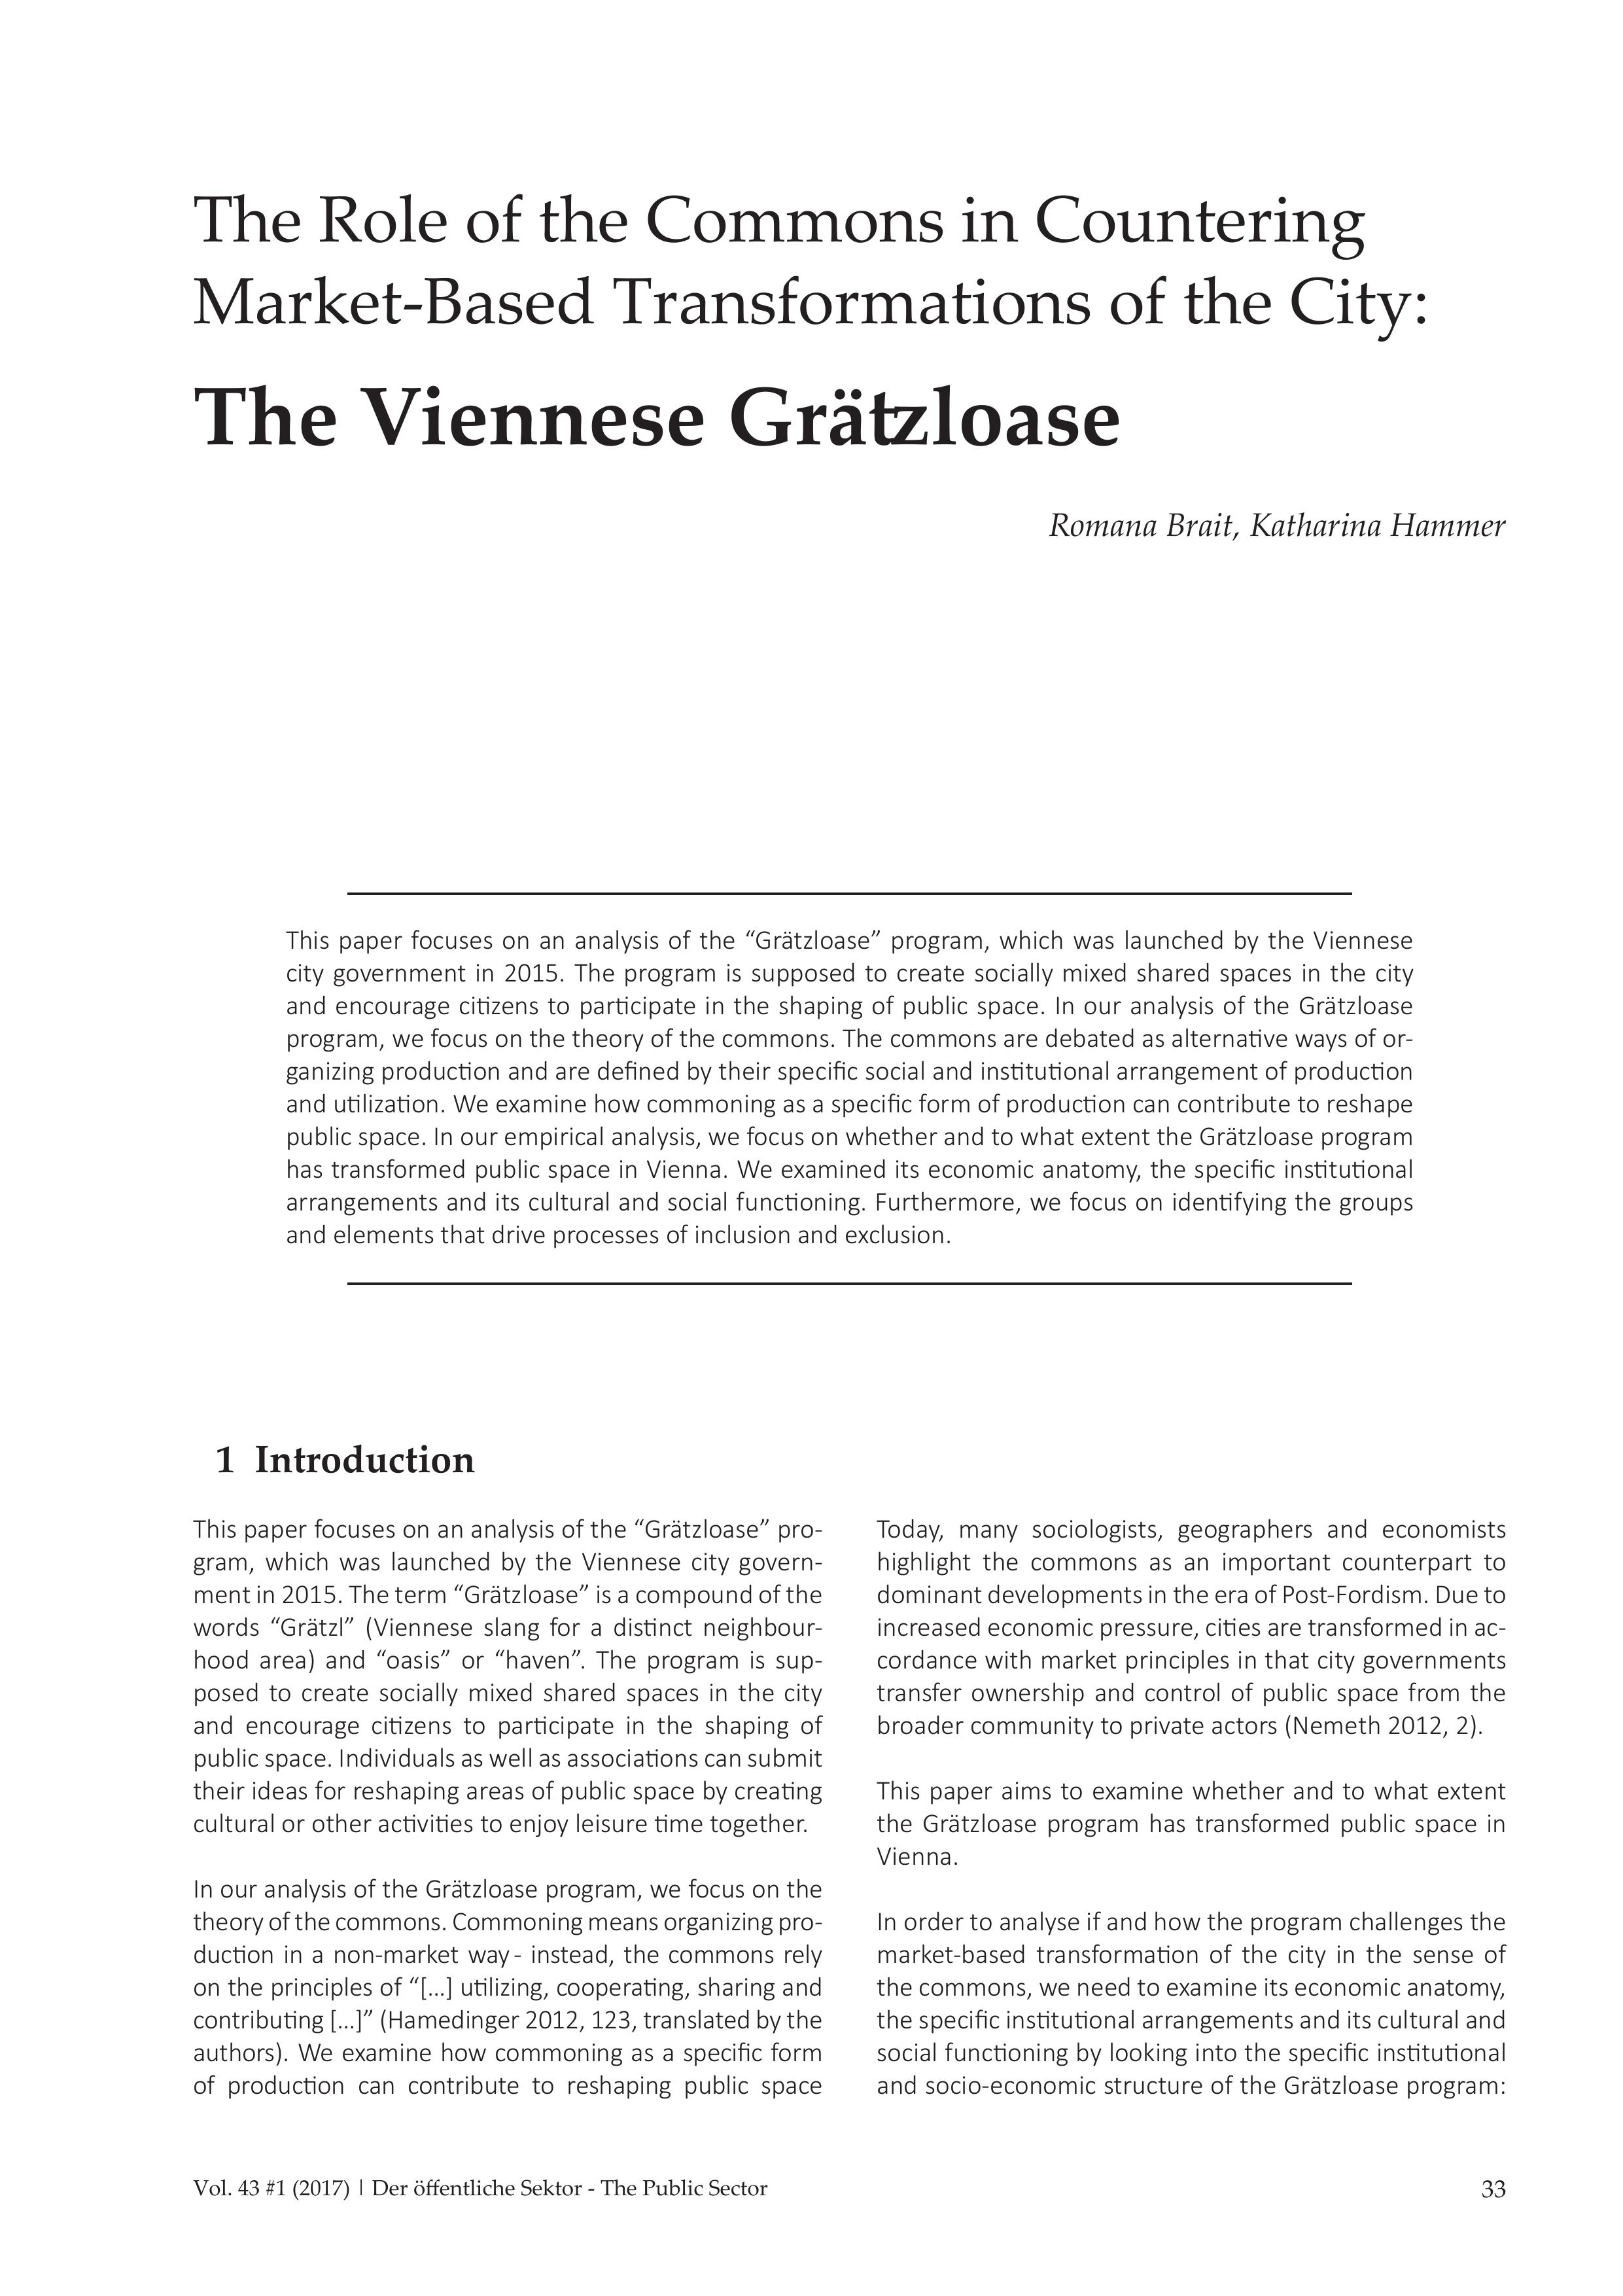 The Viennese Grätzloase